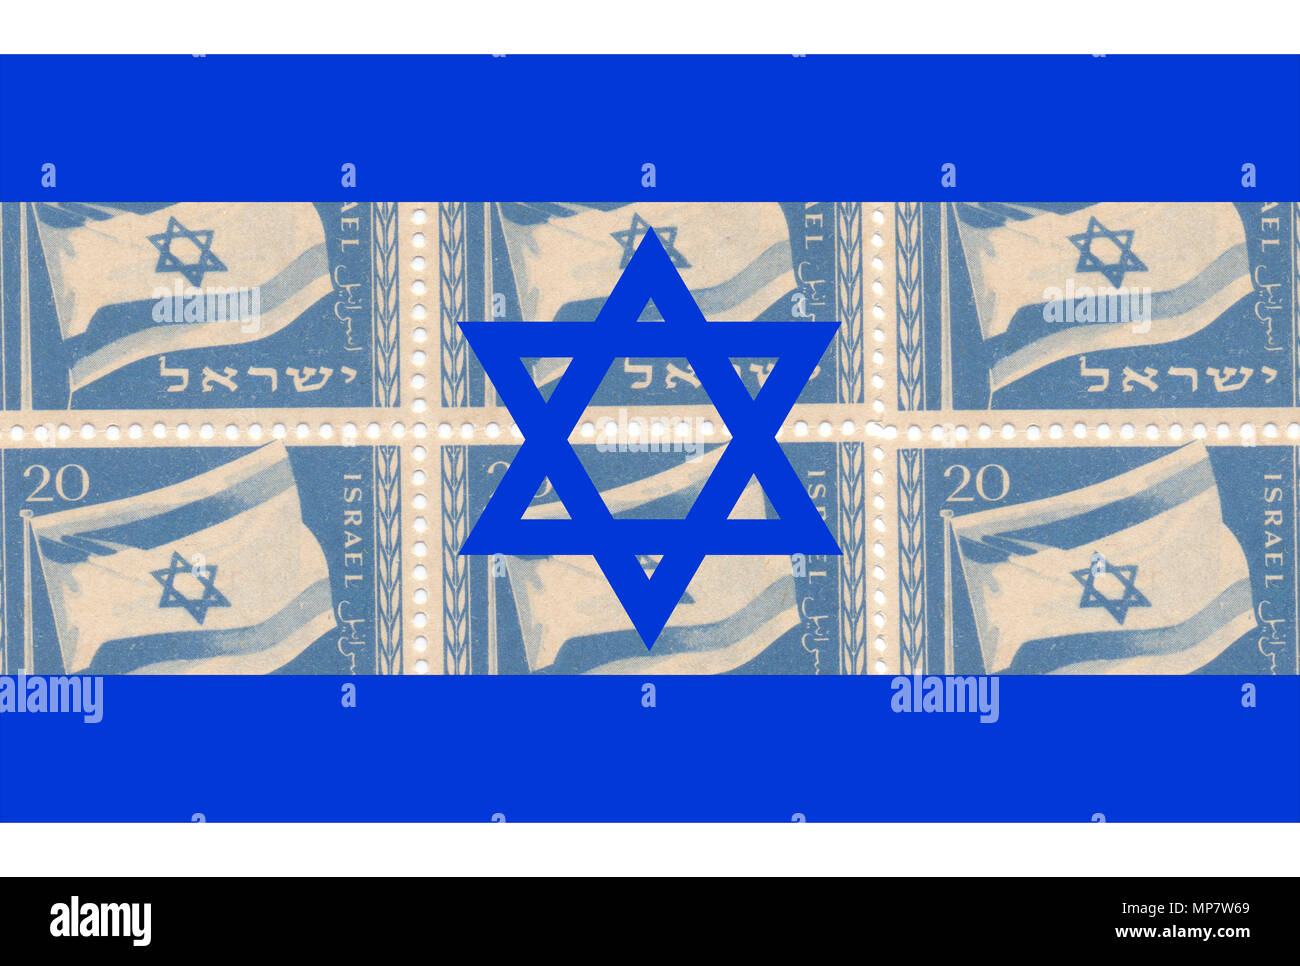 Amélioration de l'image numérique tampon israélien du drapeau israélien à partir de 1949 sur fond d'un drapeau israélien Banque D'Images